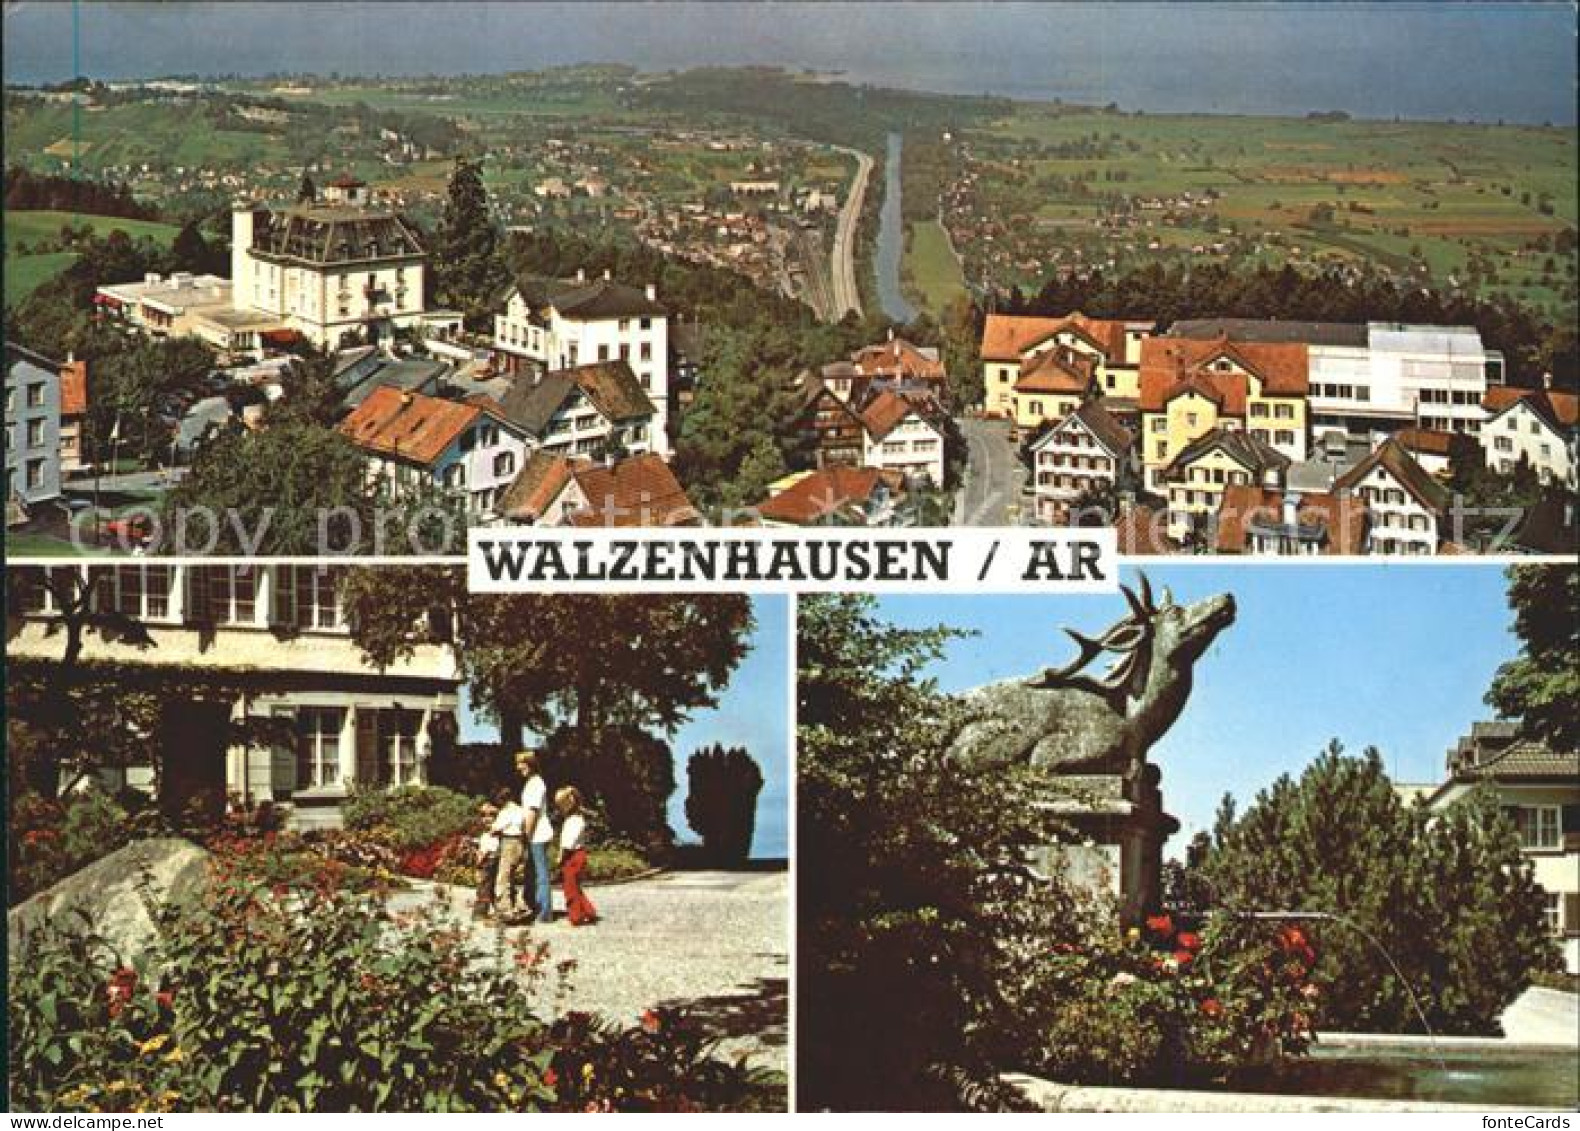 11691637 Walzenhausen AR Panorama Mit Rheineck Alten Rhein Und Bodensee Walzenha - Sonstige & Ohne Zuordnung